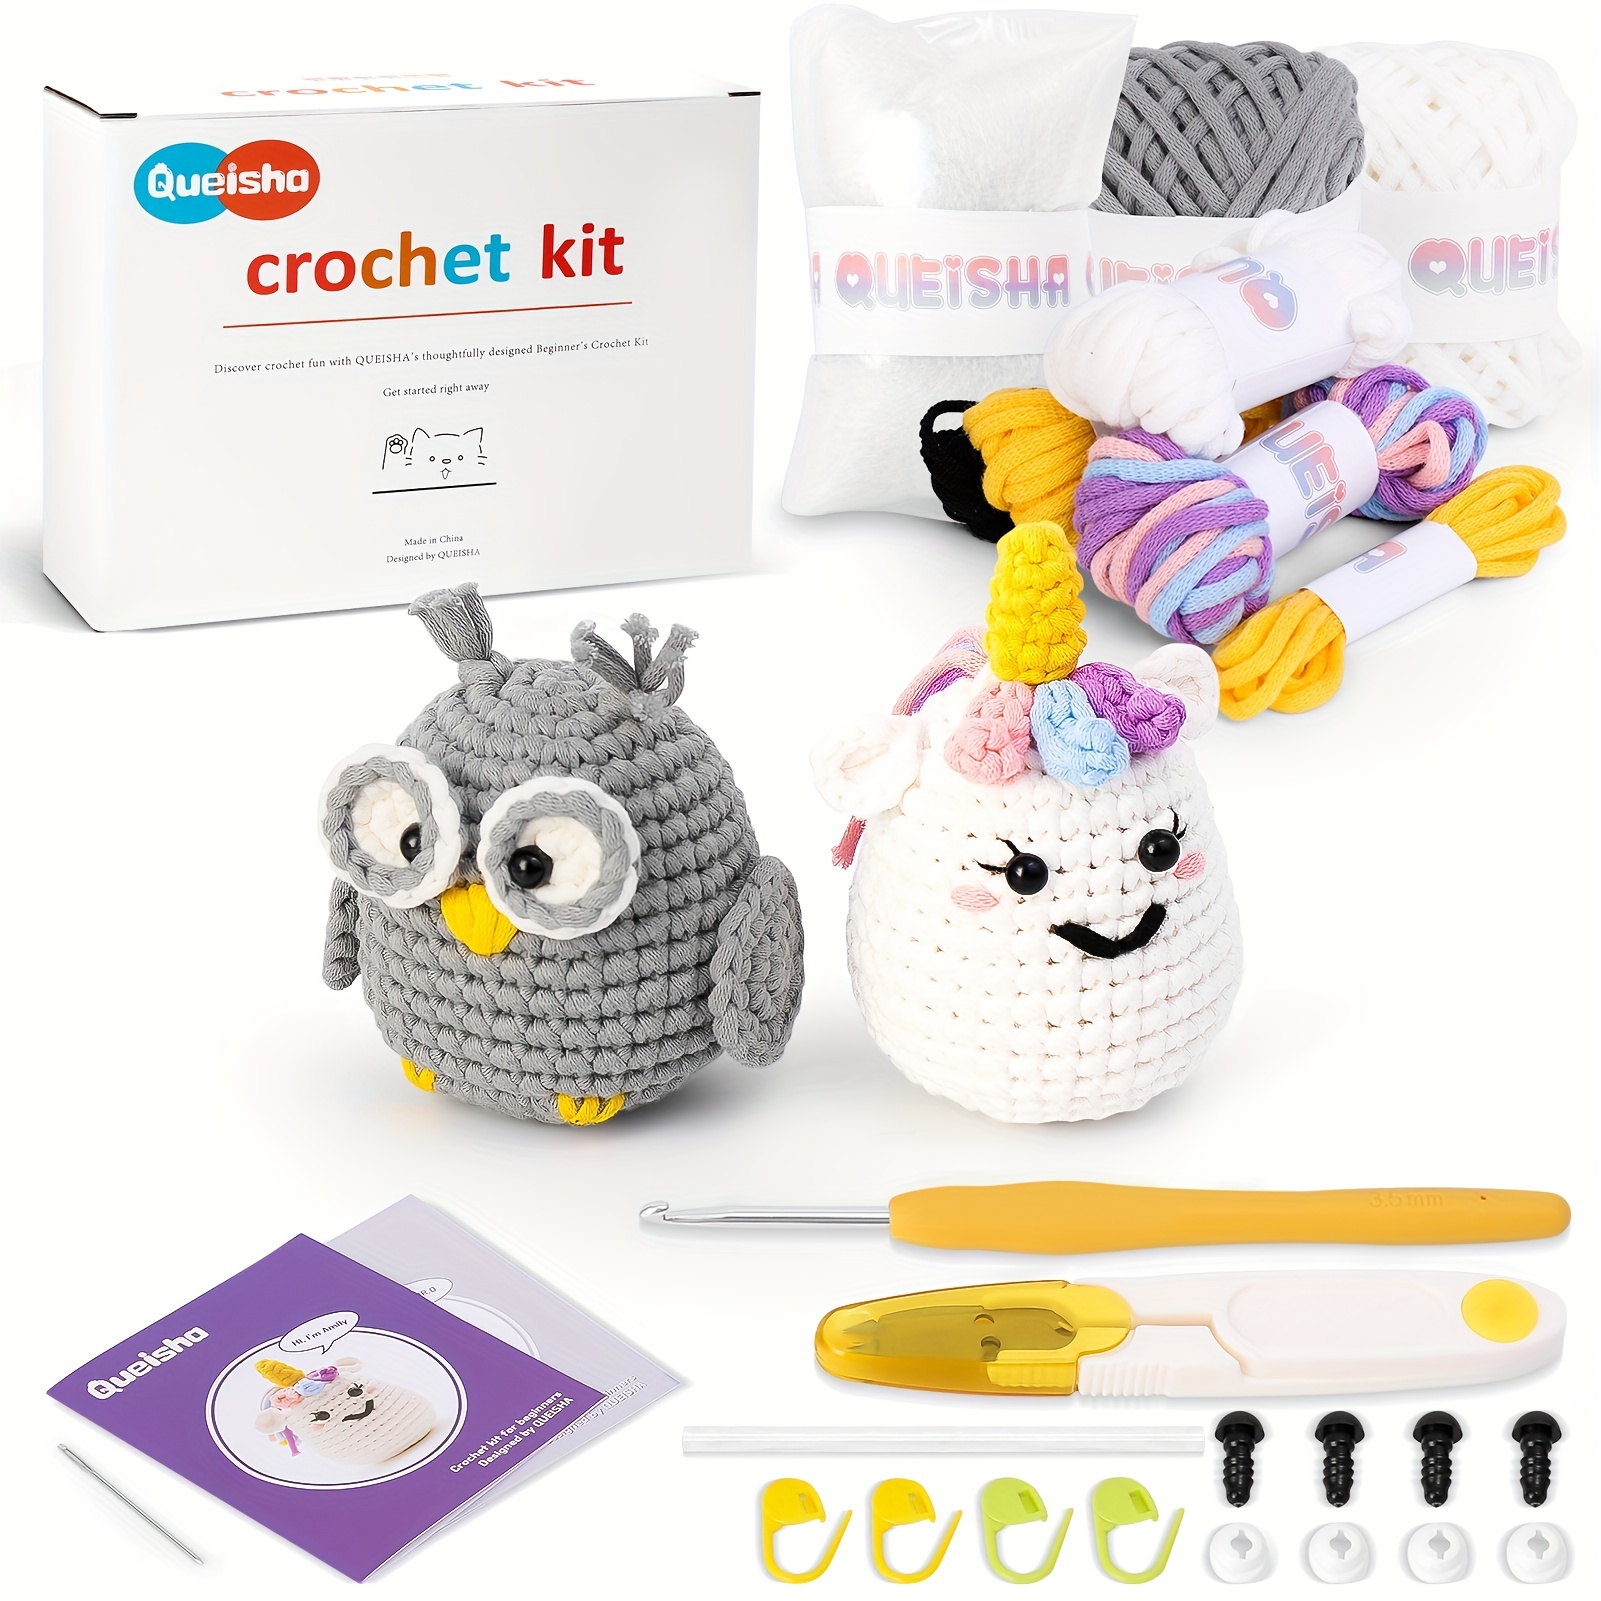 Beginner Crochet Kit Crochet Animal Kit With Yarn Complete - Temu